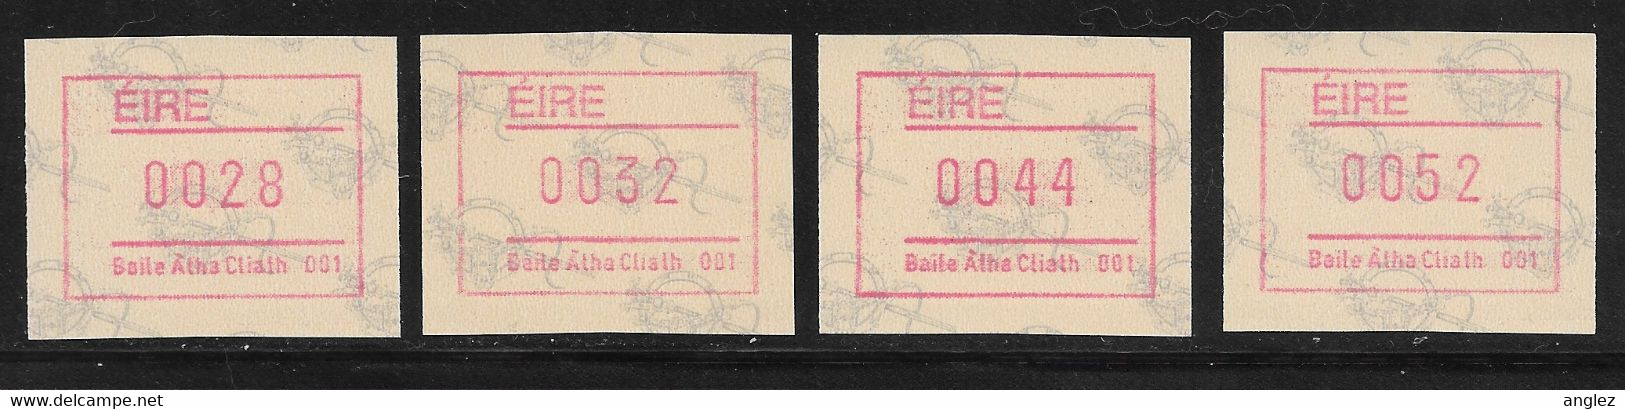 Ireland - 1992 Tara Brooch ATM / Frama Labels 4v MNH - Automatenmarken (Frama)